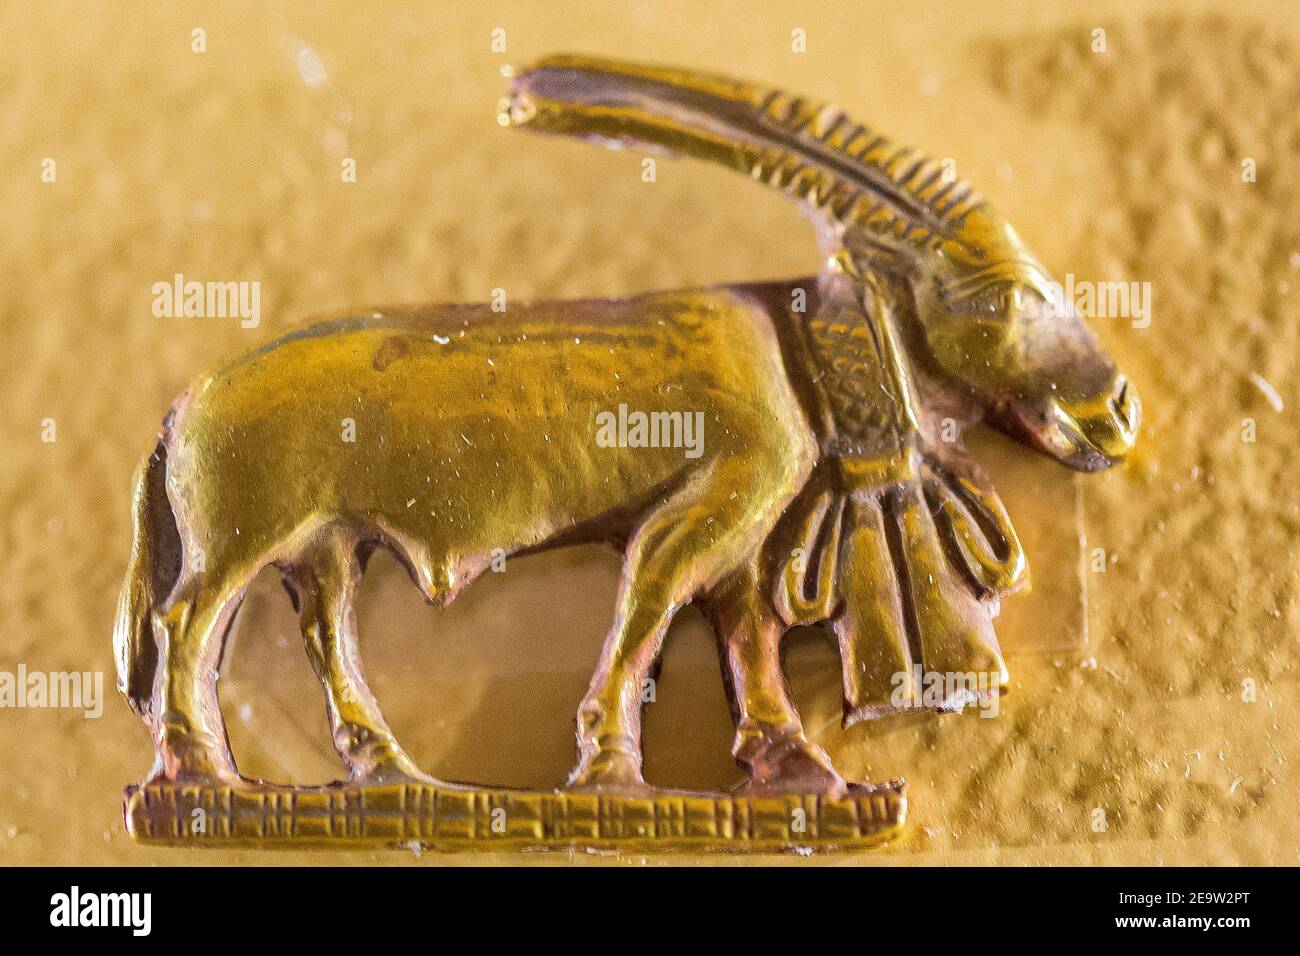 Égypte, le Caire, Musée égyptien, amulette d'or trouvée dans un tombeau de Nag el Deir, première dynastie : un oryx. Banque D'Images